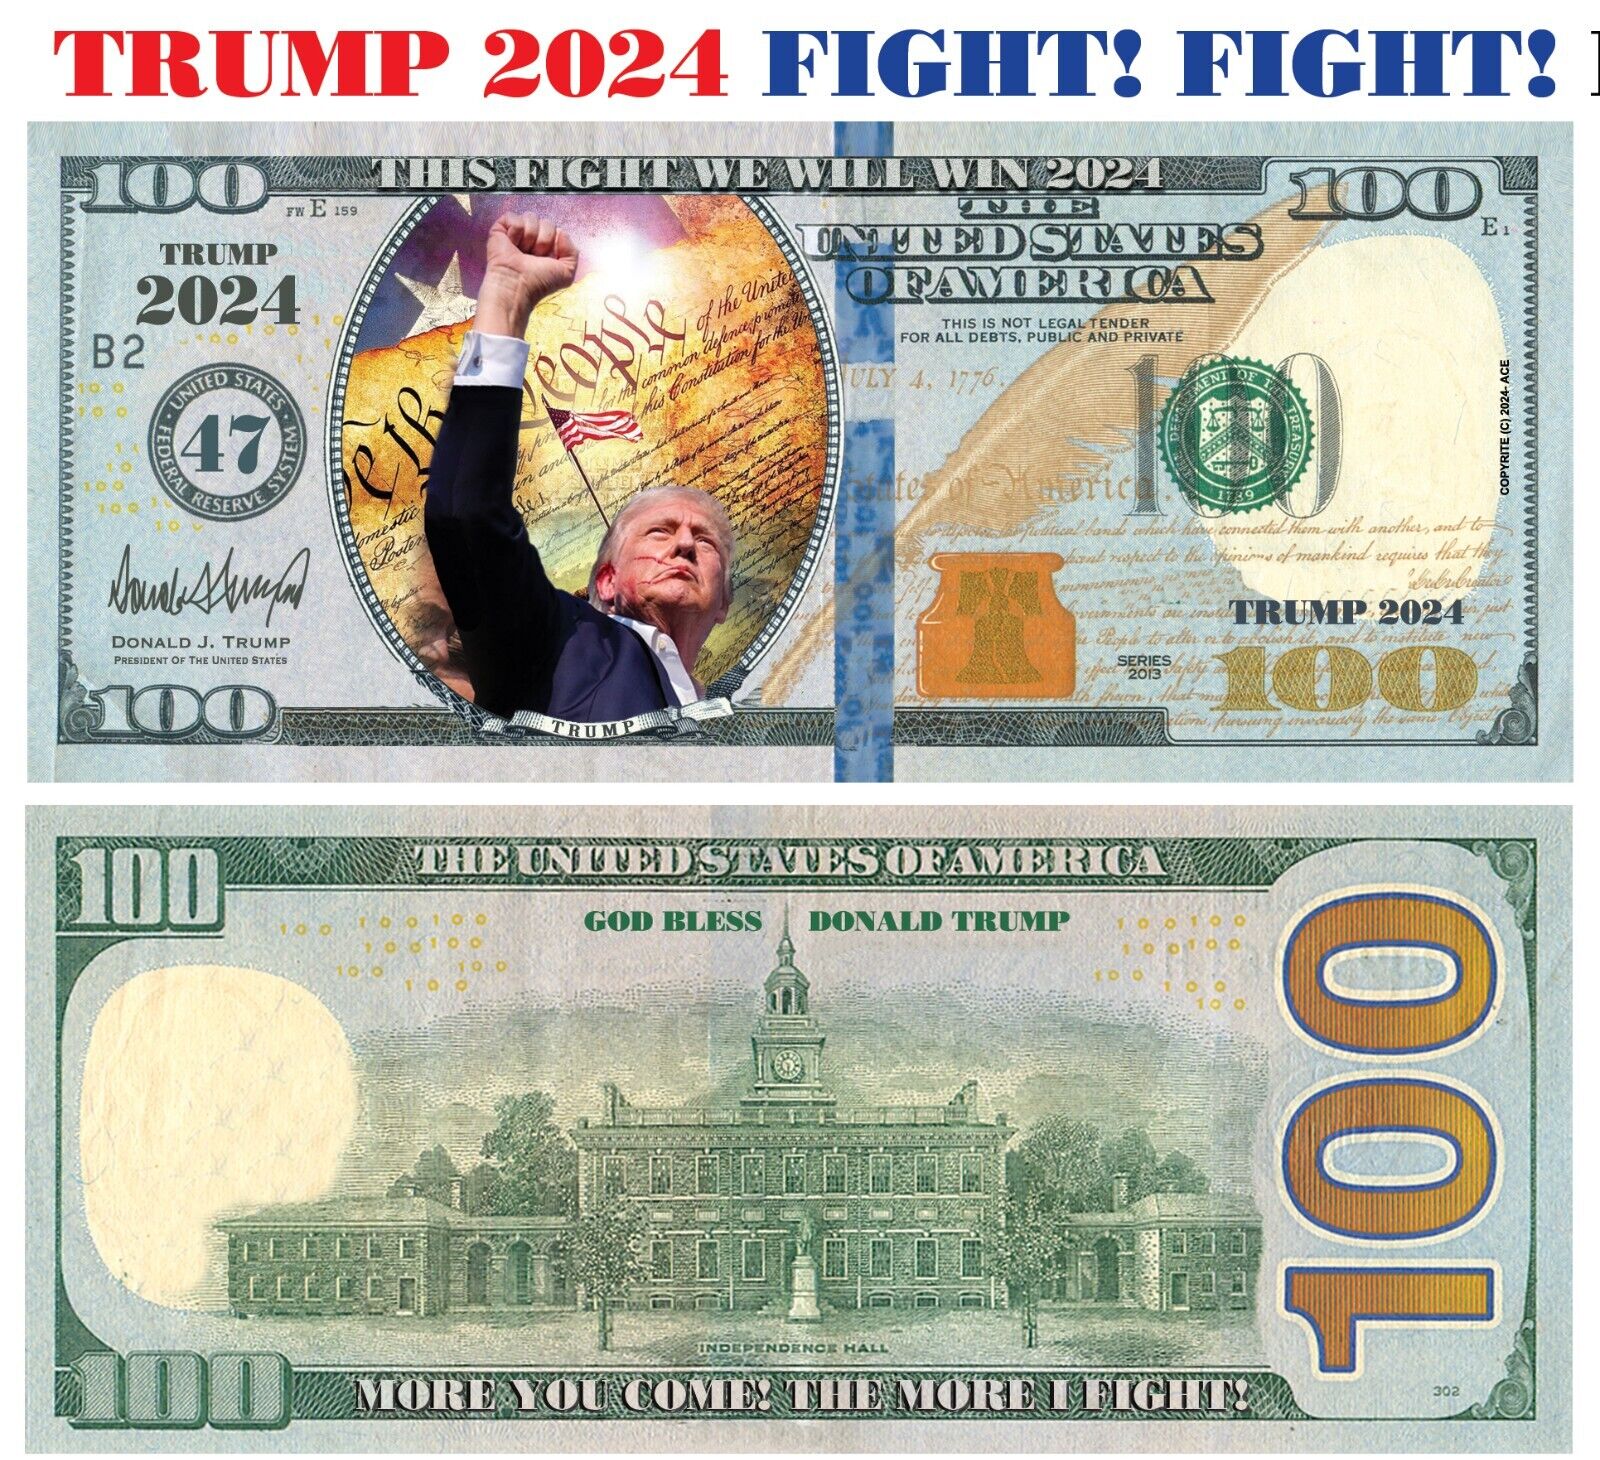 50 pack TRUMP FIGHT, FIGHT FIGHT 2024 Dollar Bills Funny Money Maga